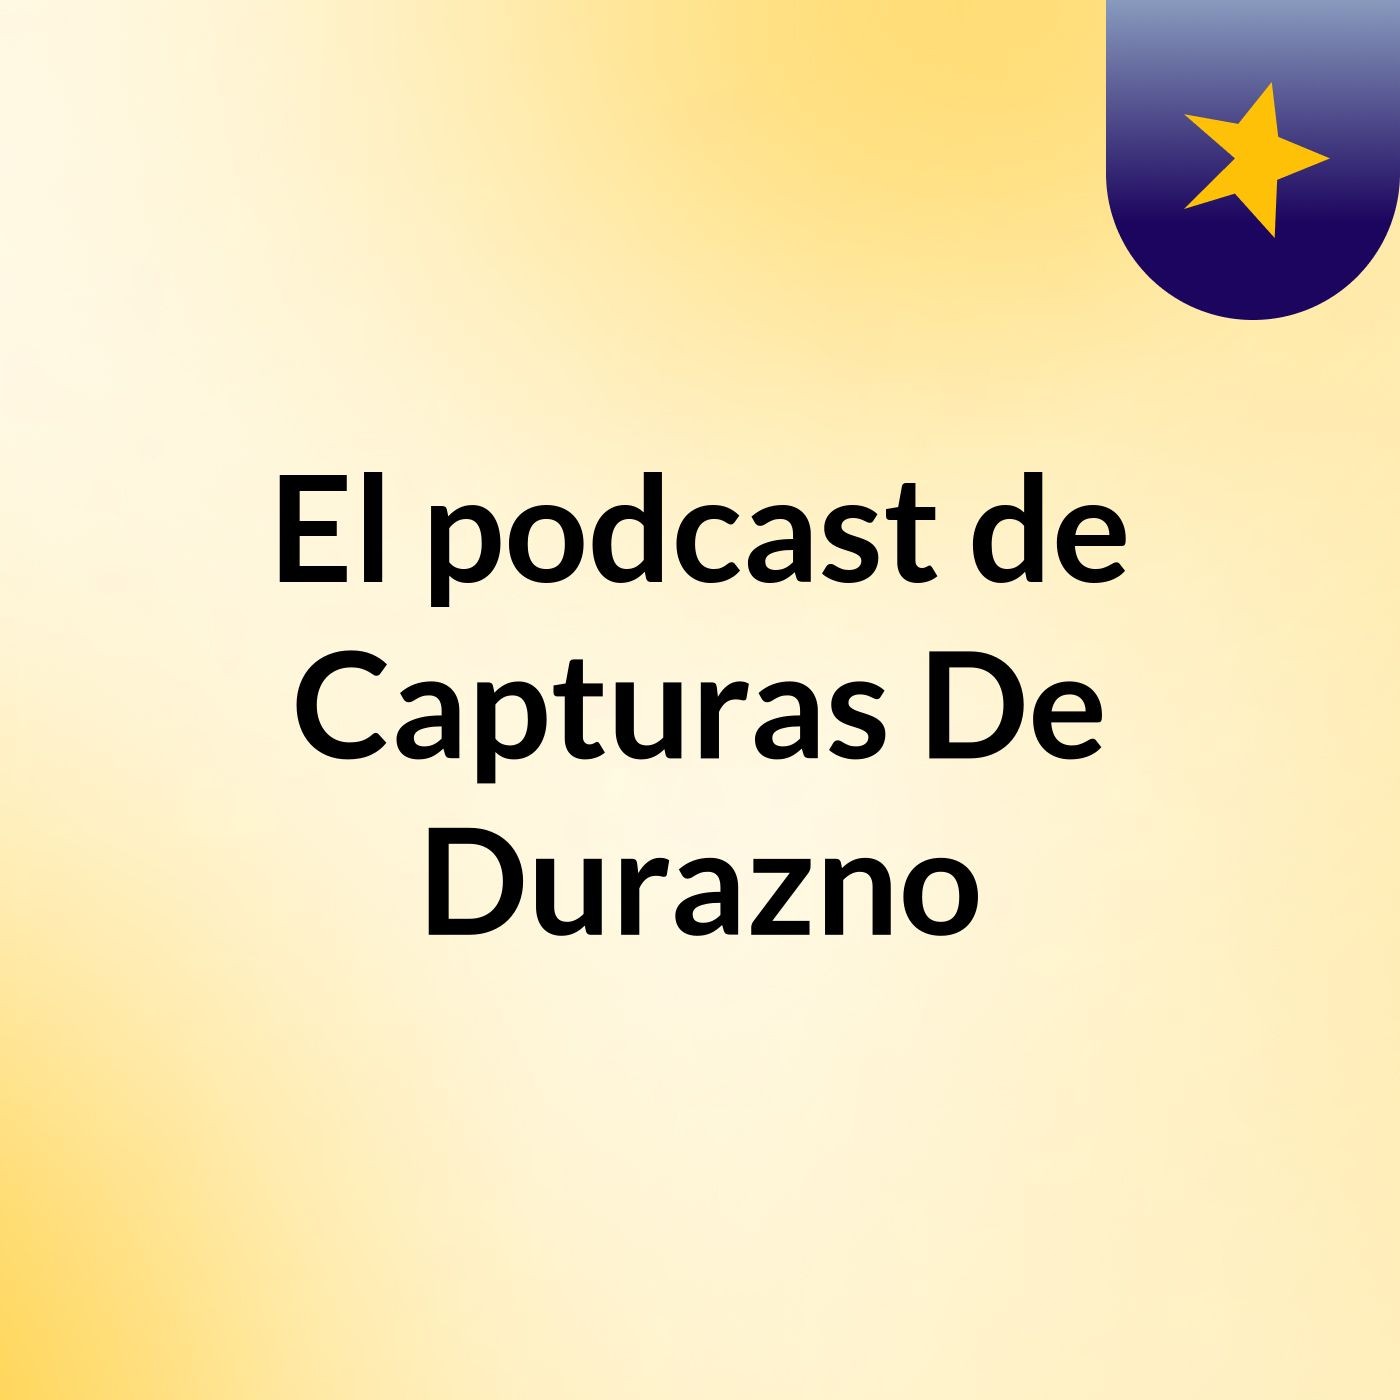 Episodio 11 - El podcast de Capturas De Durazno